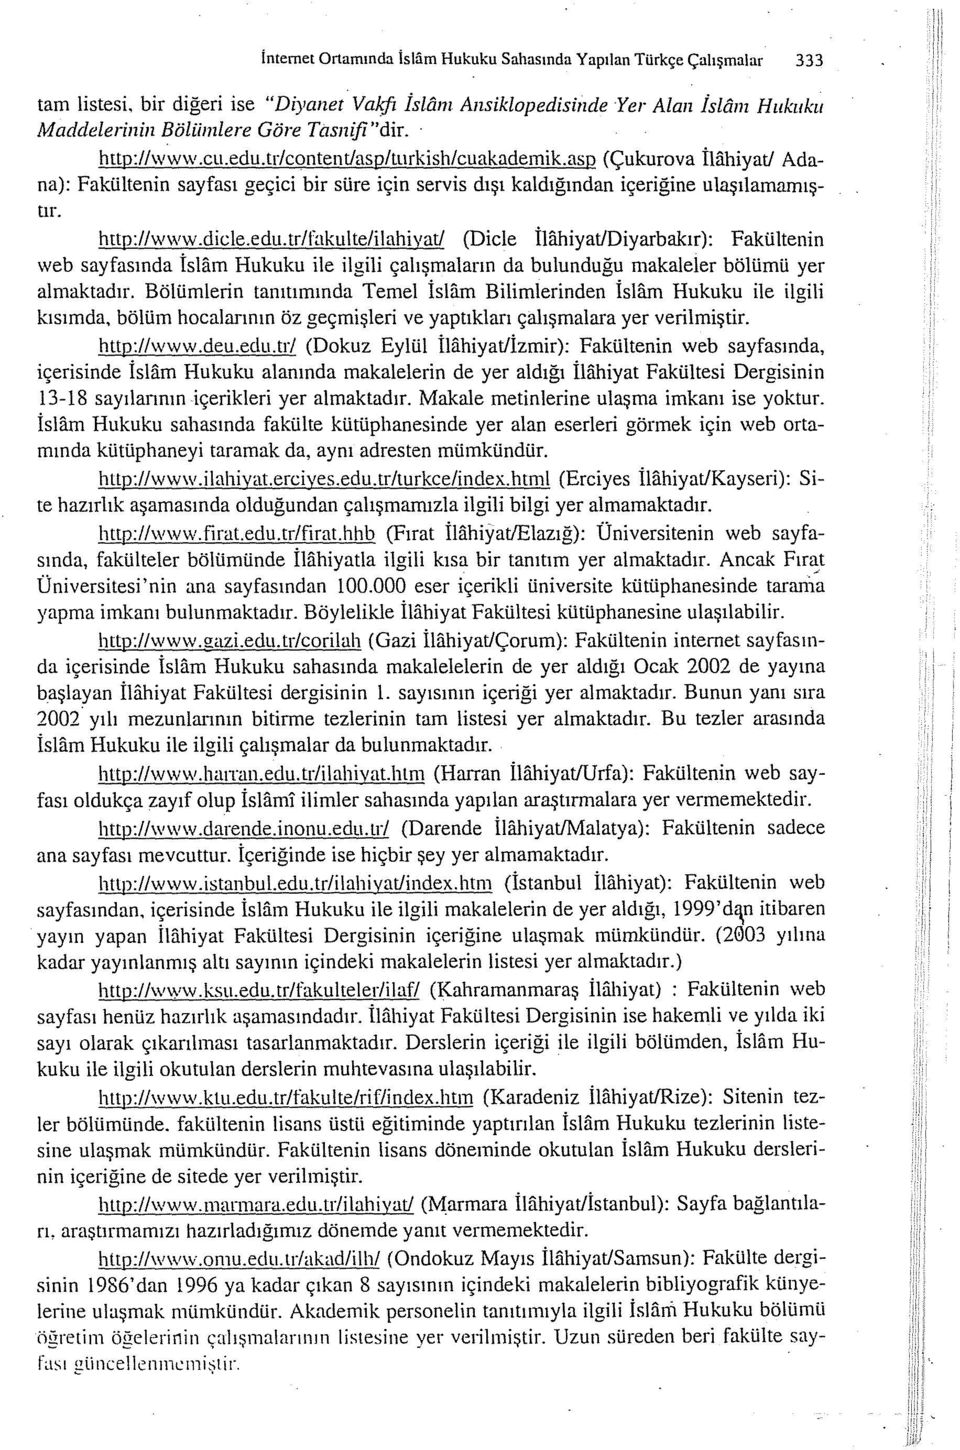 asp (Çukurova İliihiyat/ Adana): Fakültenin sayfası geçici bir süre için servis dışı kaldığından içeriğine ulaşılamamıştır. http://www.dicle.edu.